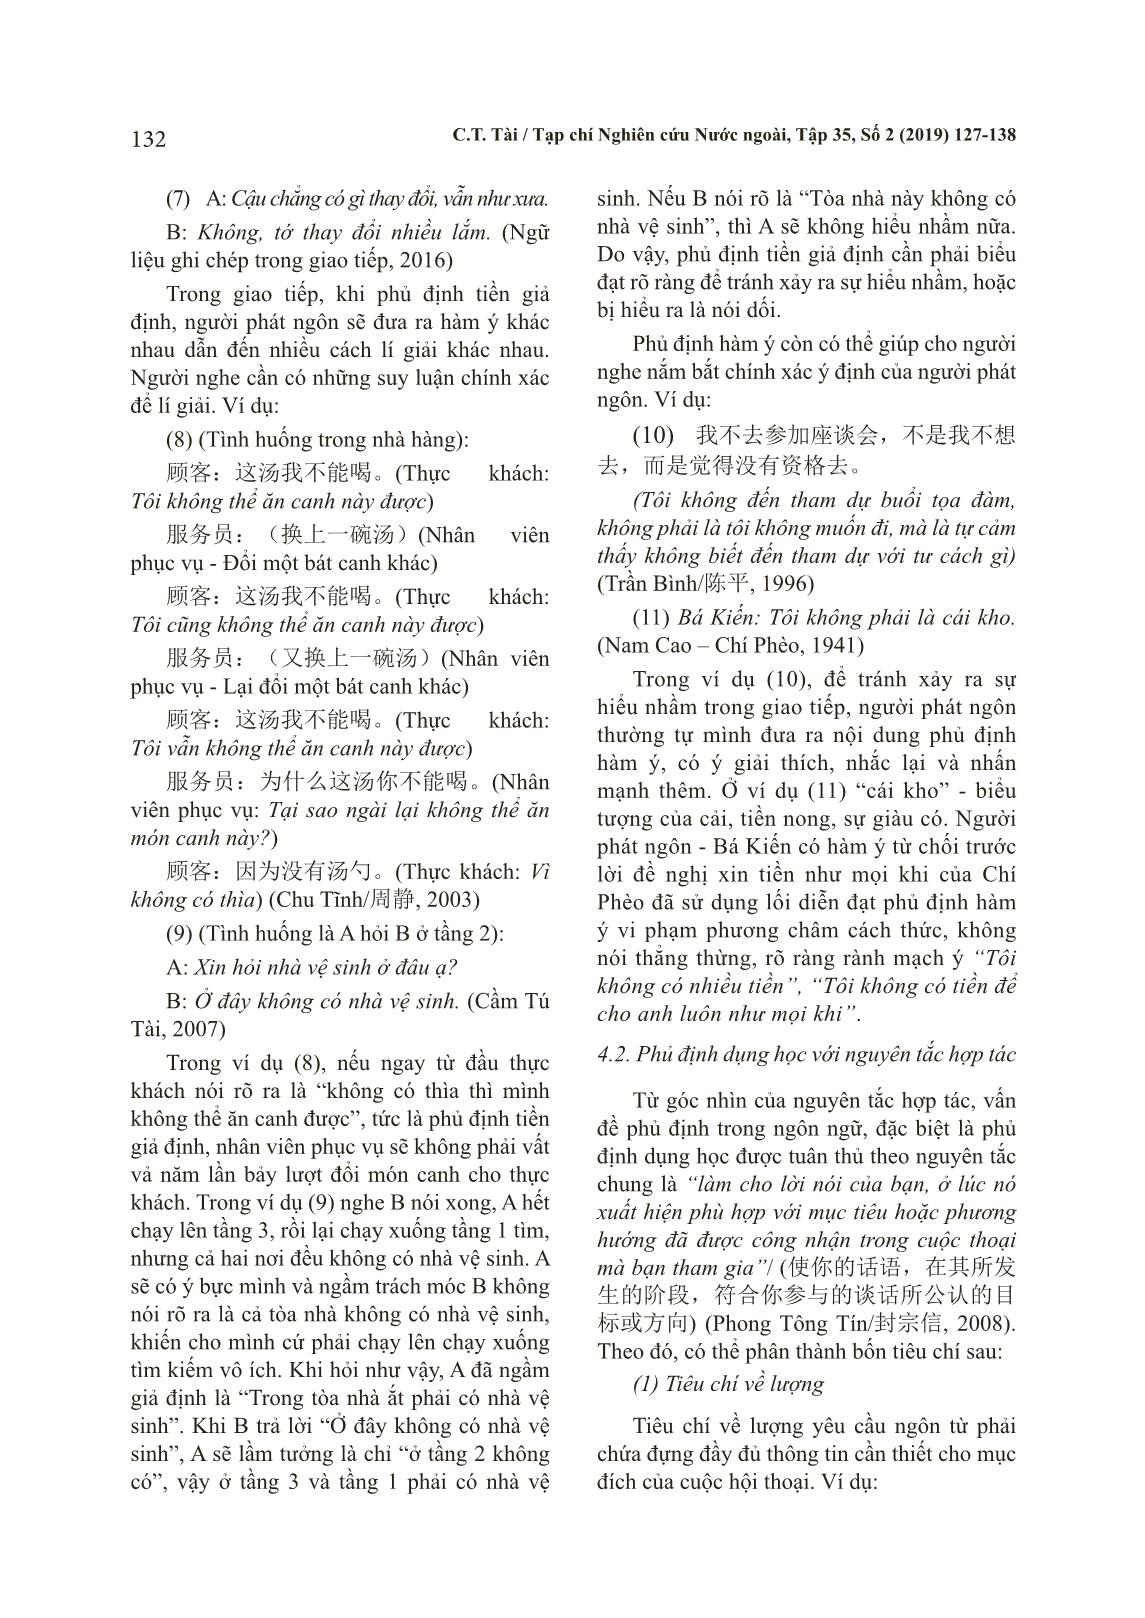 Bàn về phương thức phủ định dụng học trong tiếng Hán và tiếng Việt trang 6